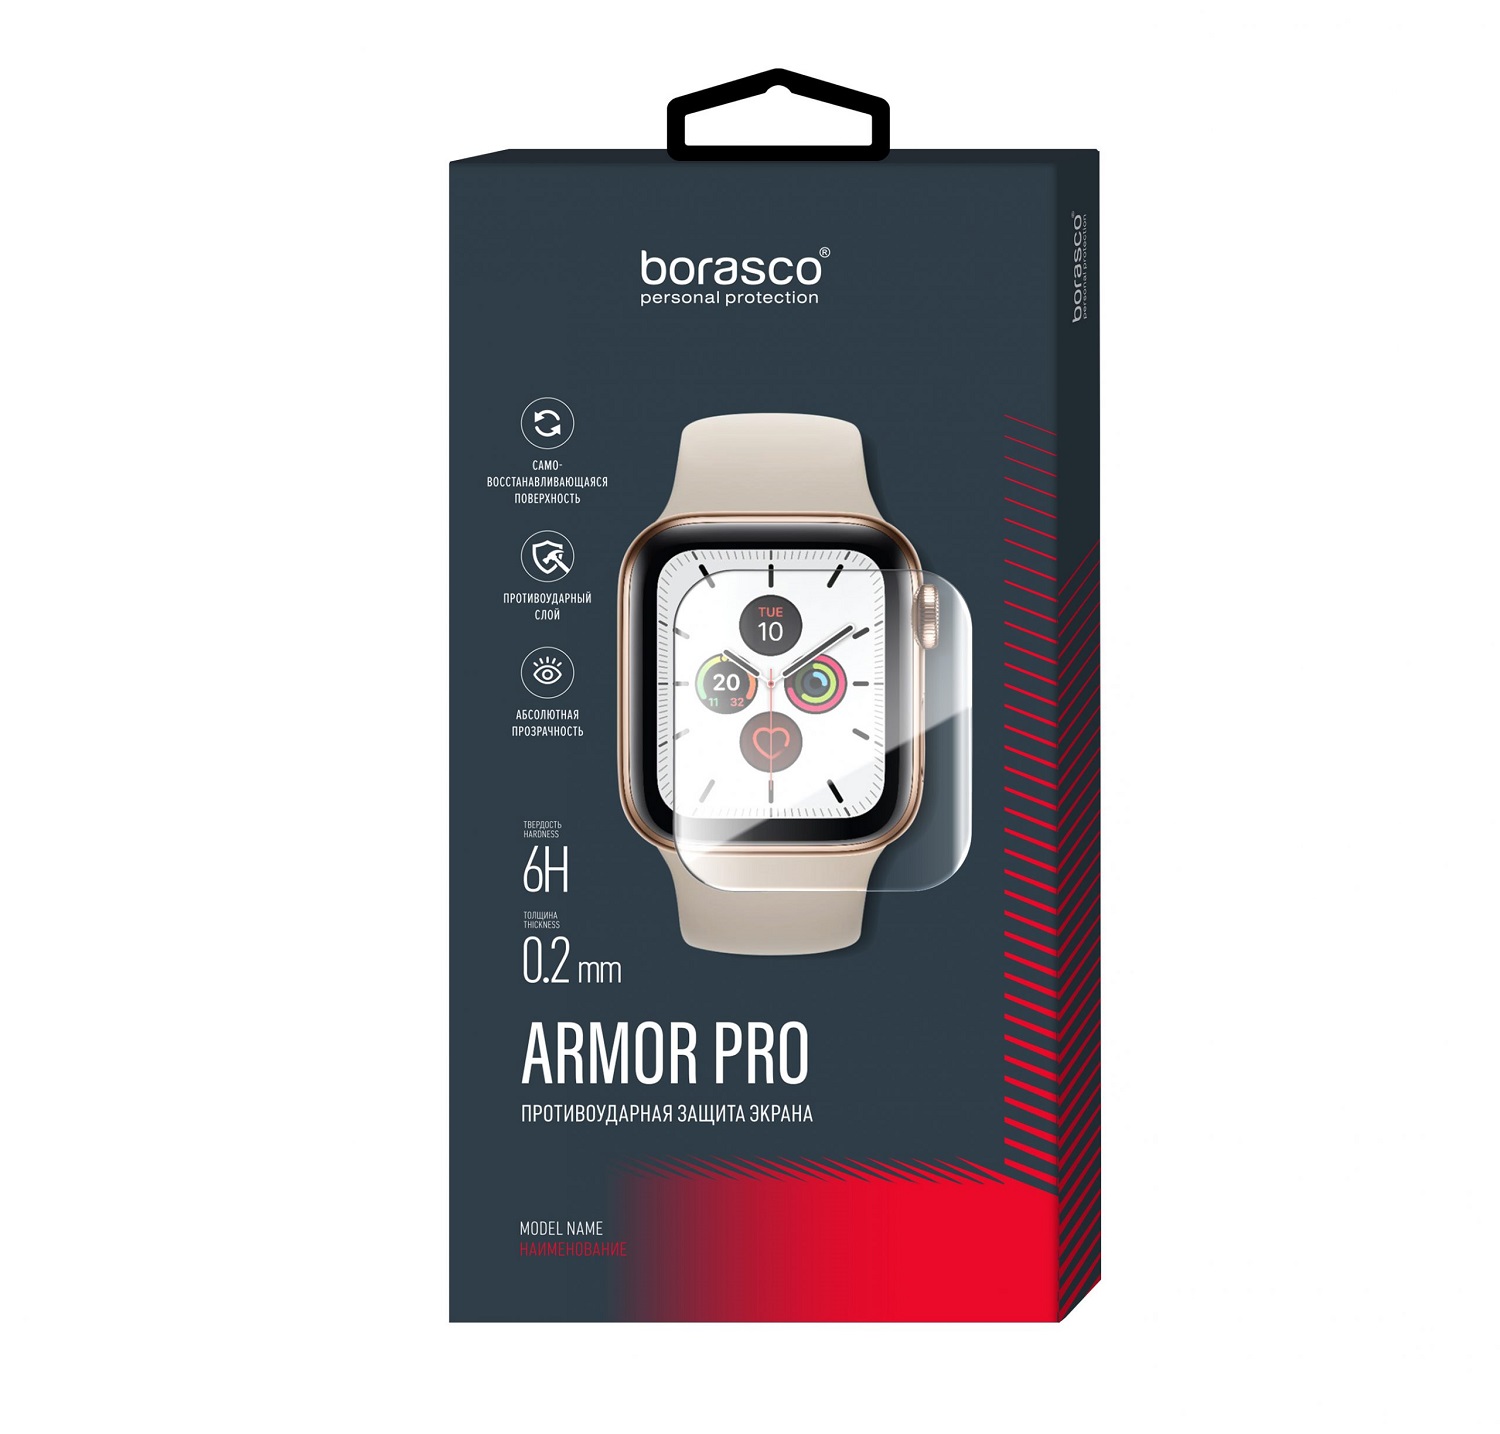 Защита экрана BoraSCO Armor Pro для Xiaomi Mi Watch защита экрана borasco armor pro для poco f2 pro